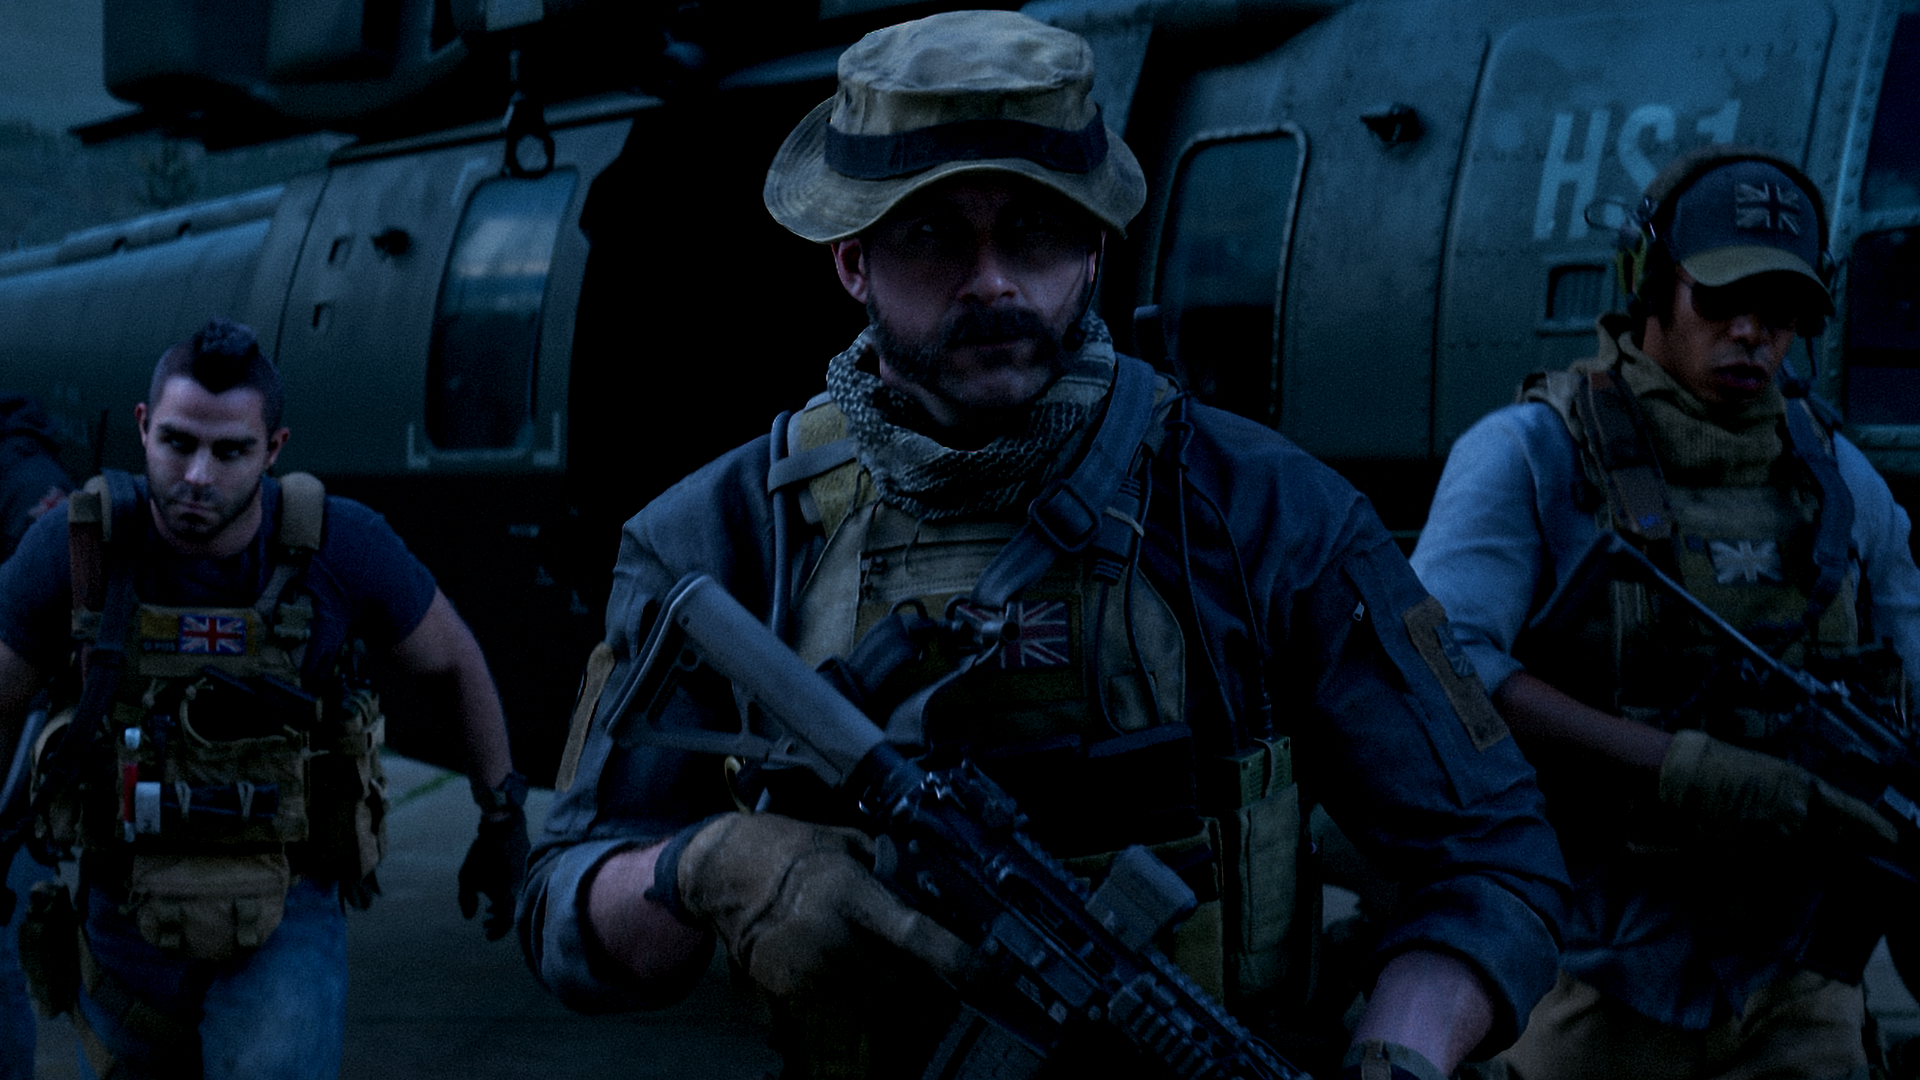 A cinematic scene from Modern Warfare 3